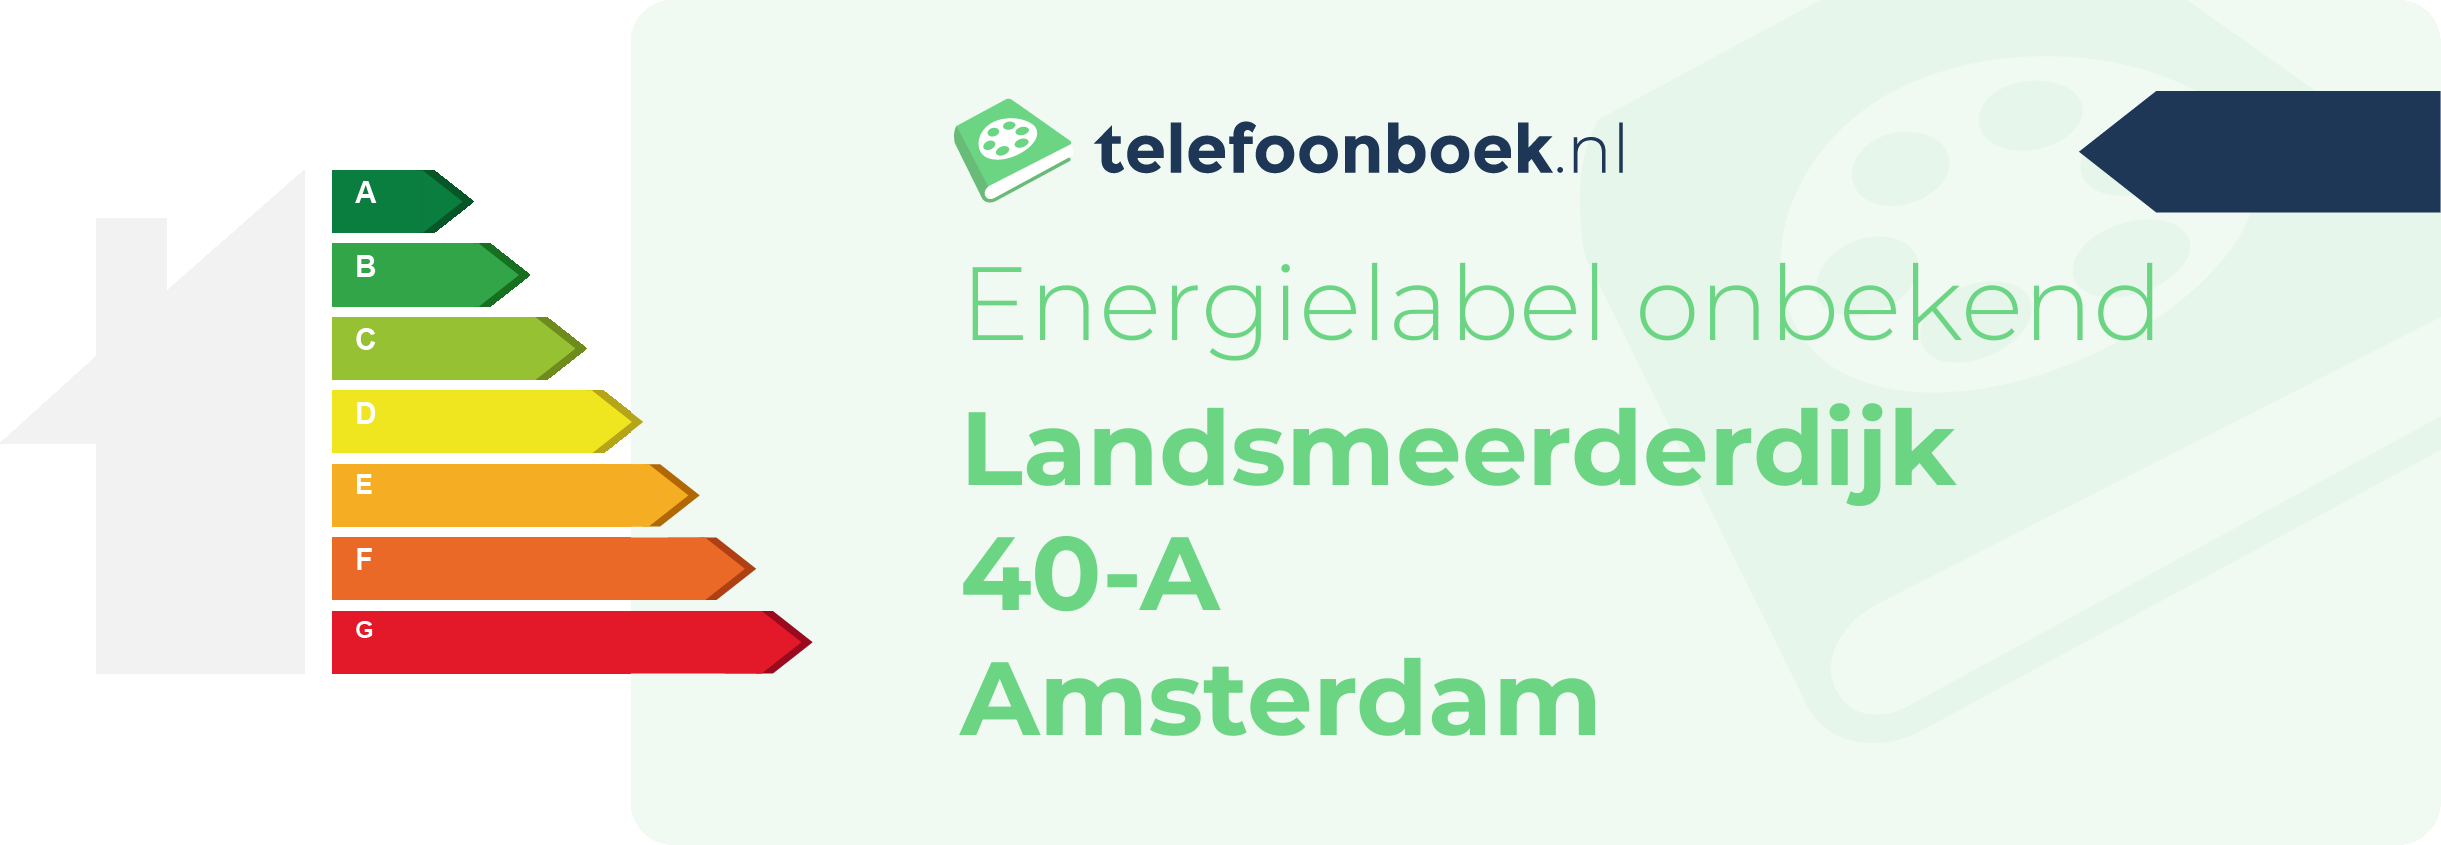 Energielabel Landsmeerderdijk 40-A Amsterdam